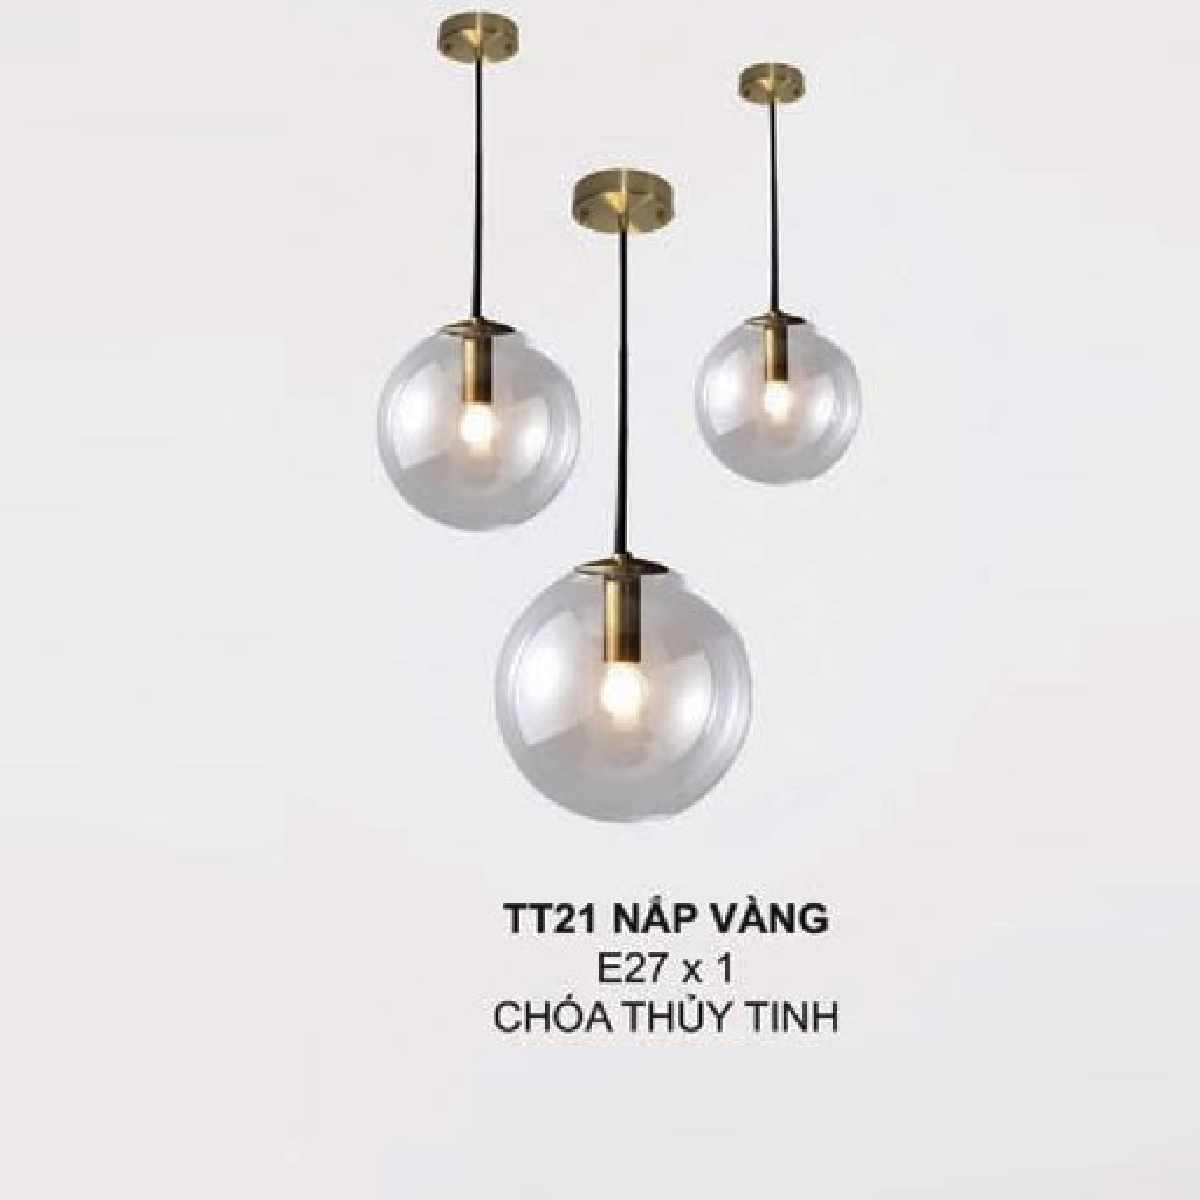 35 - TT21 NẮP VÀNG: Đèn thả đơn chao thủy tinh - KT: Ø250mm - Đèn E27 x 1 bóng